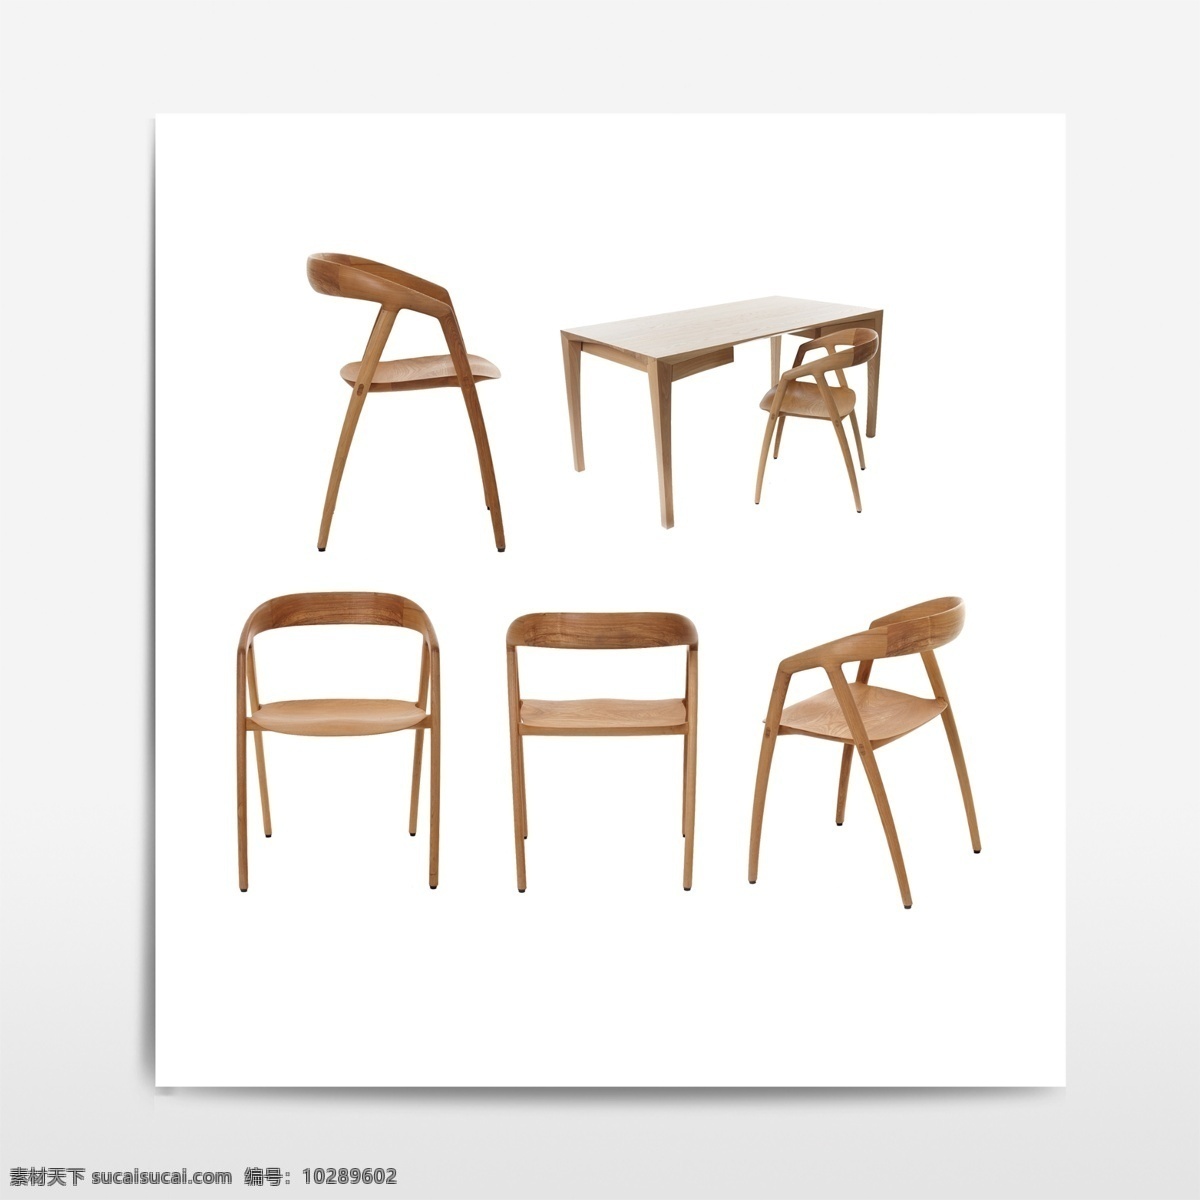 椅子元素 实木椅子 书桌 实木桌子 家具元素 家居元素 免抠元素 分层